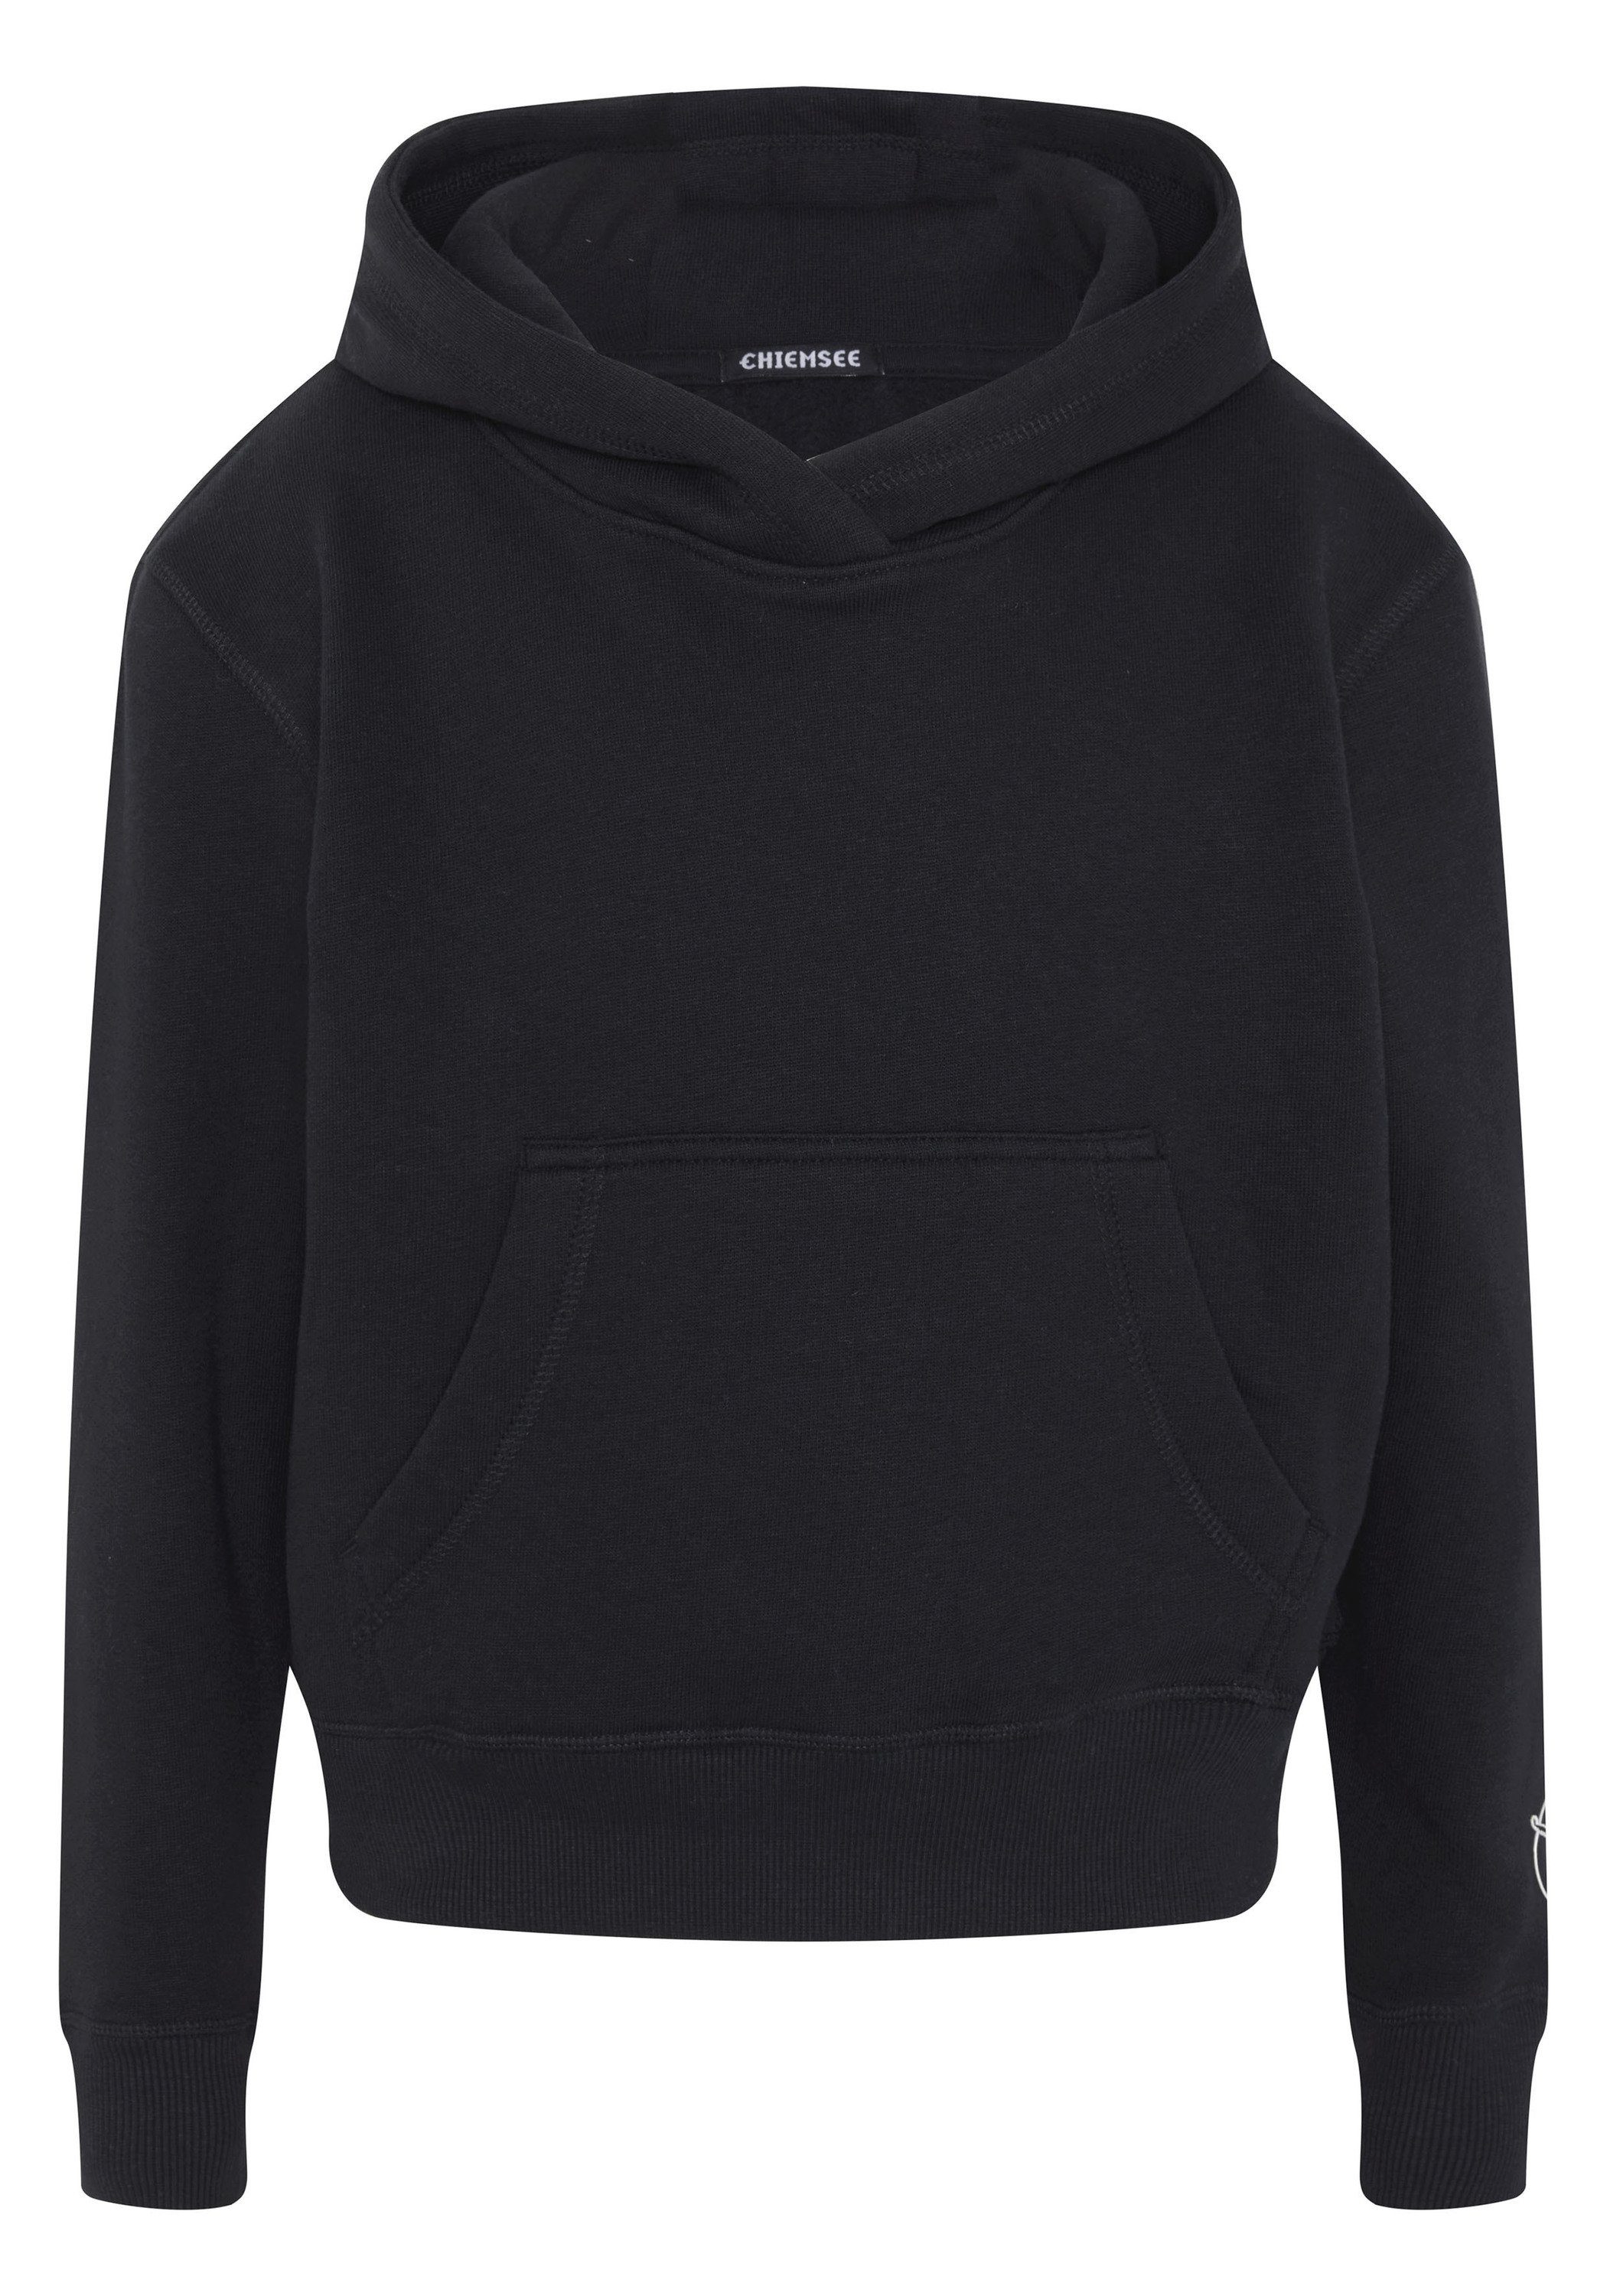 Chiemsee Kapuzensweatshirt Hoodie aus Baumwollmix im Basic-Look 1 schwarz